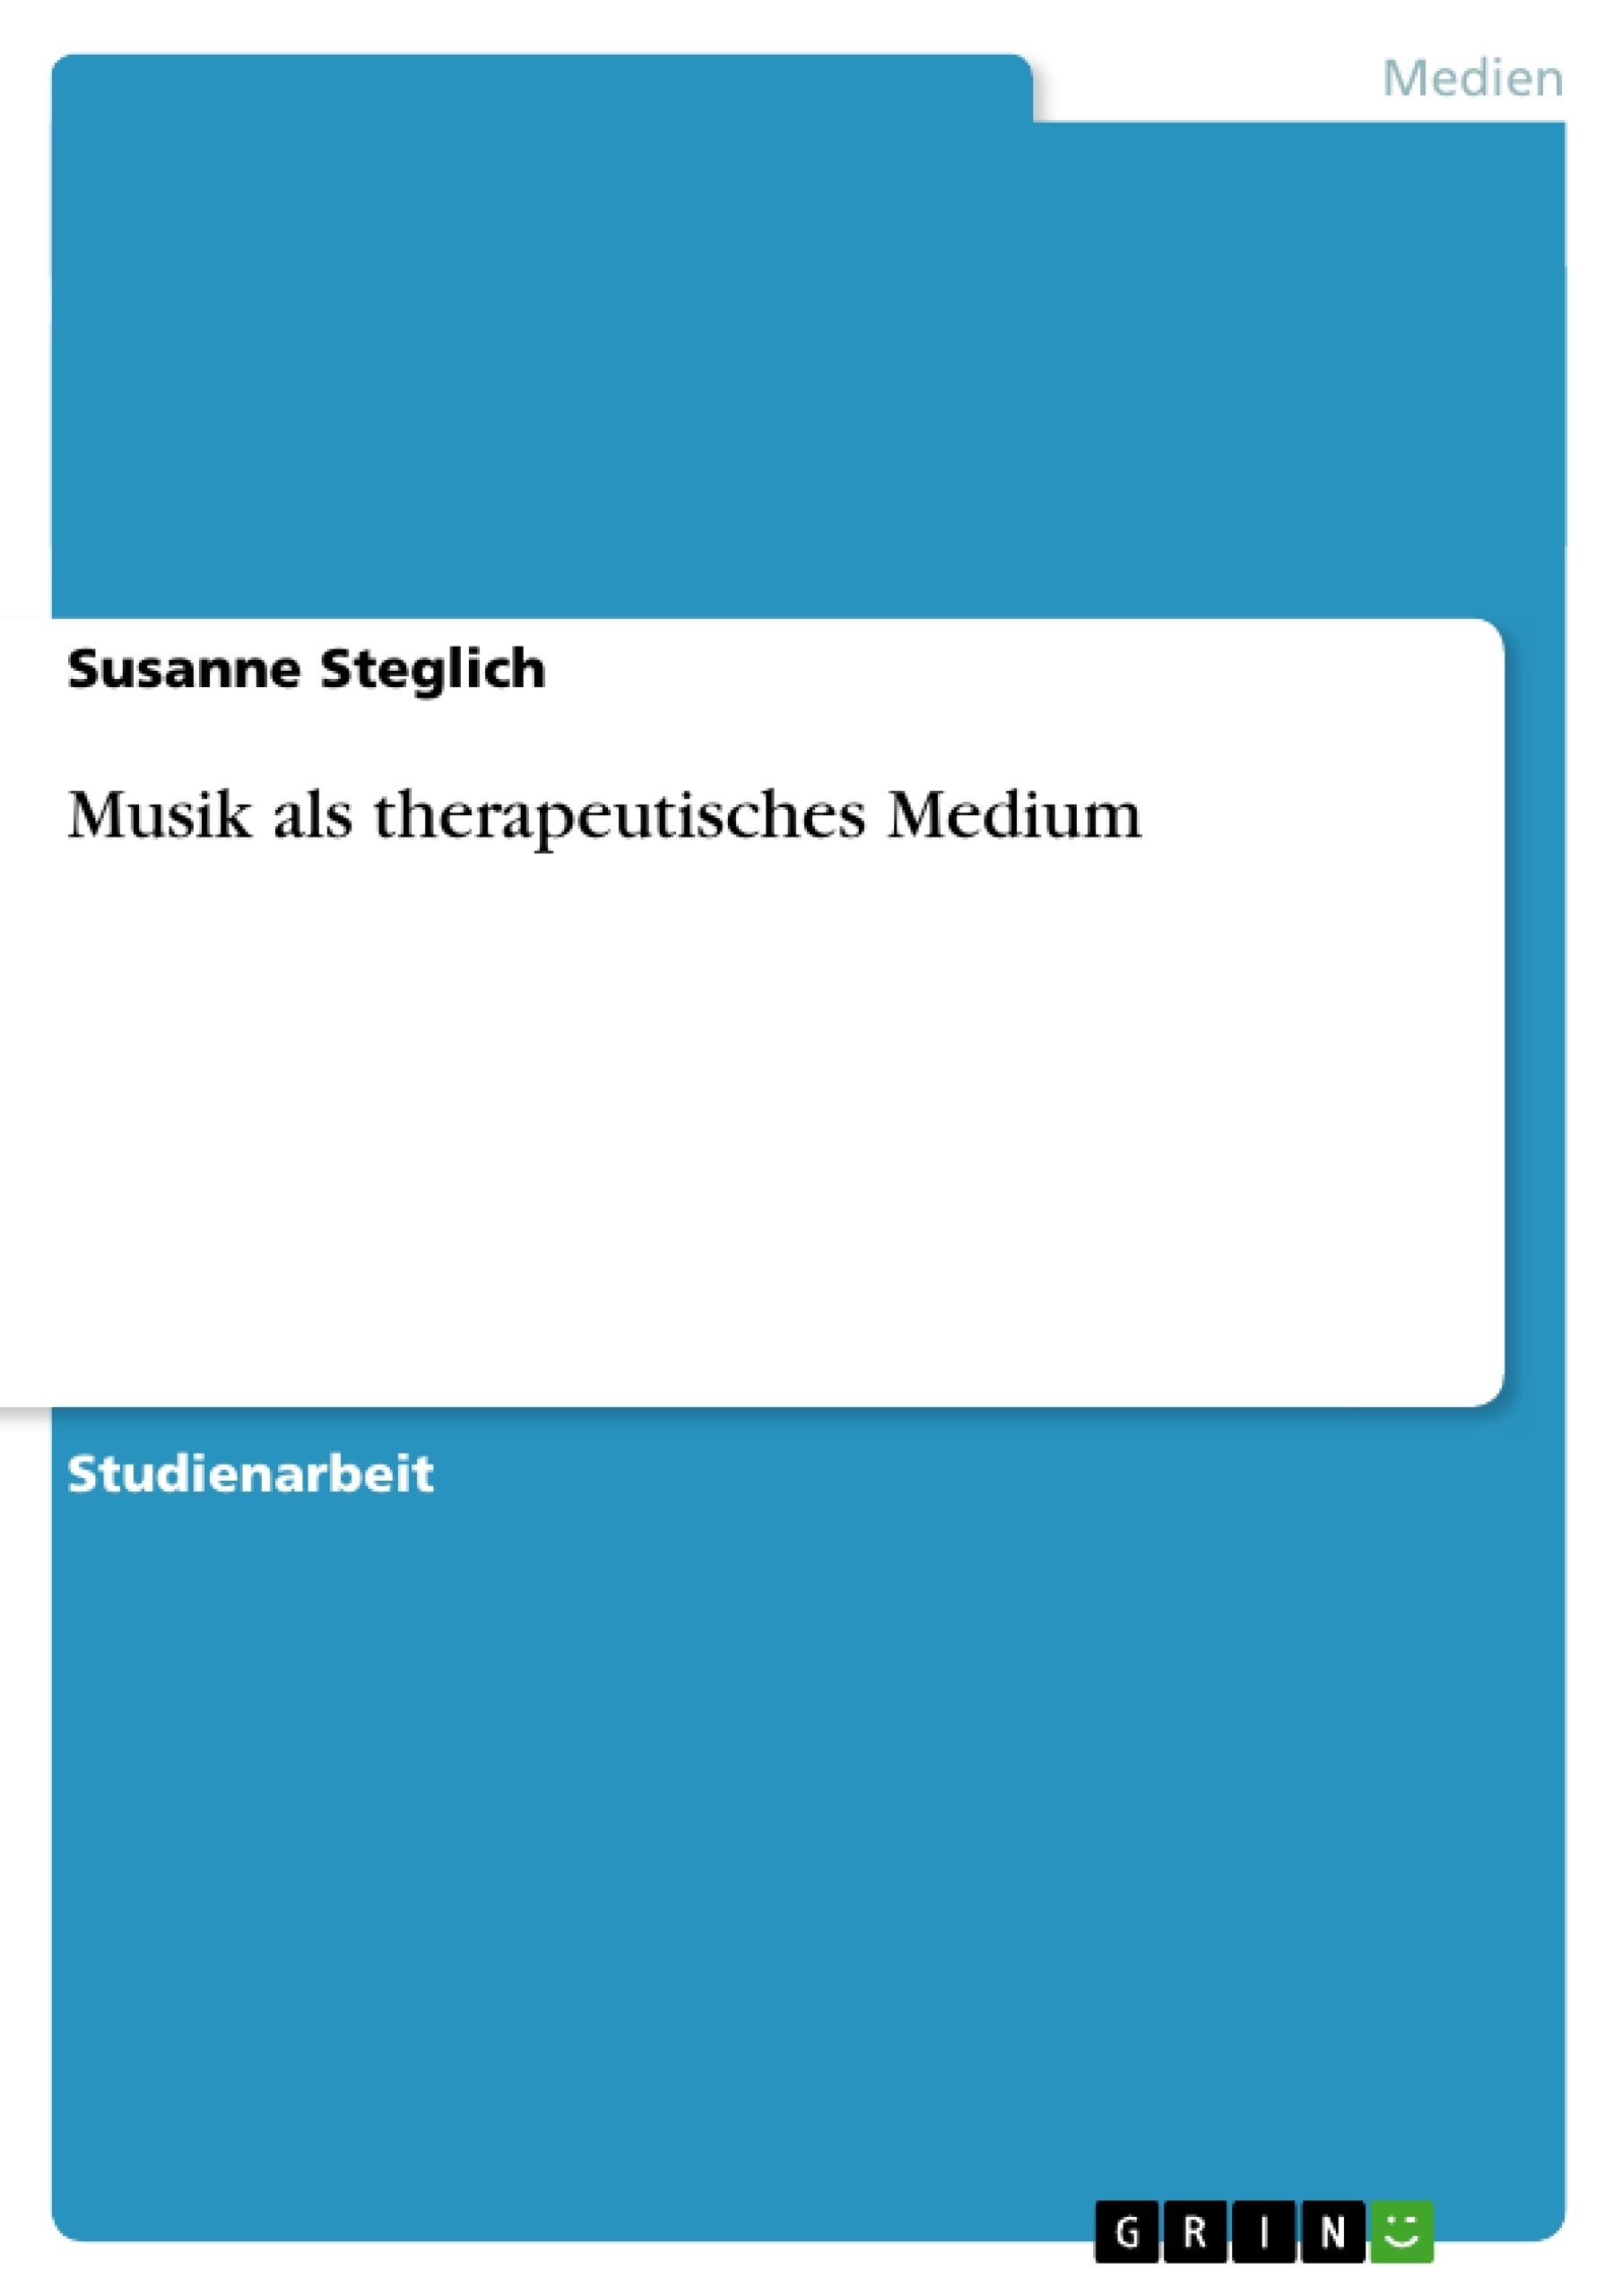 Título: Musik als therapeutisches Medium